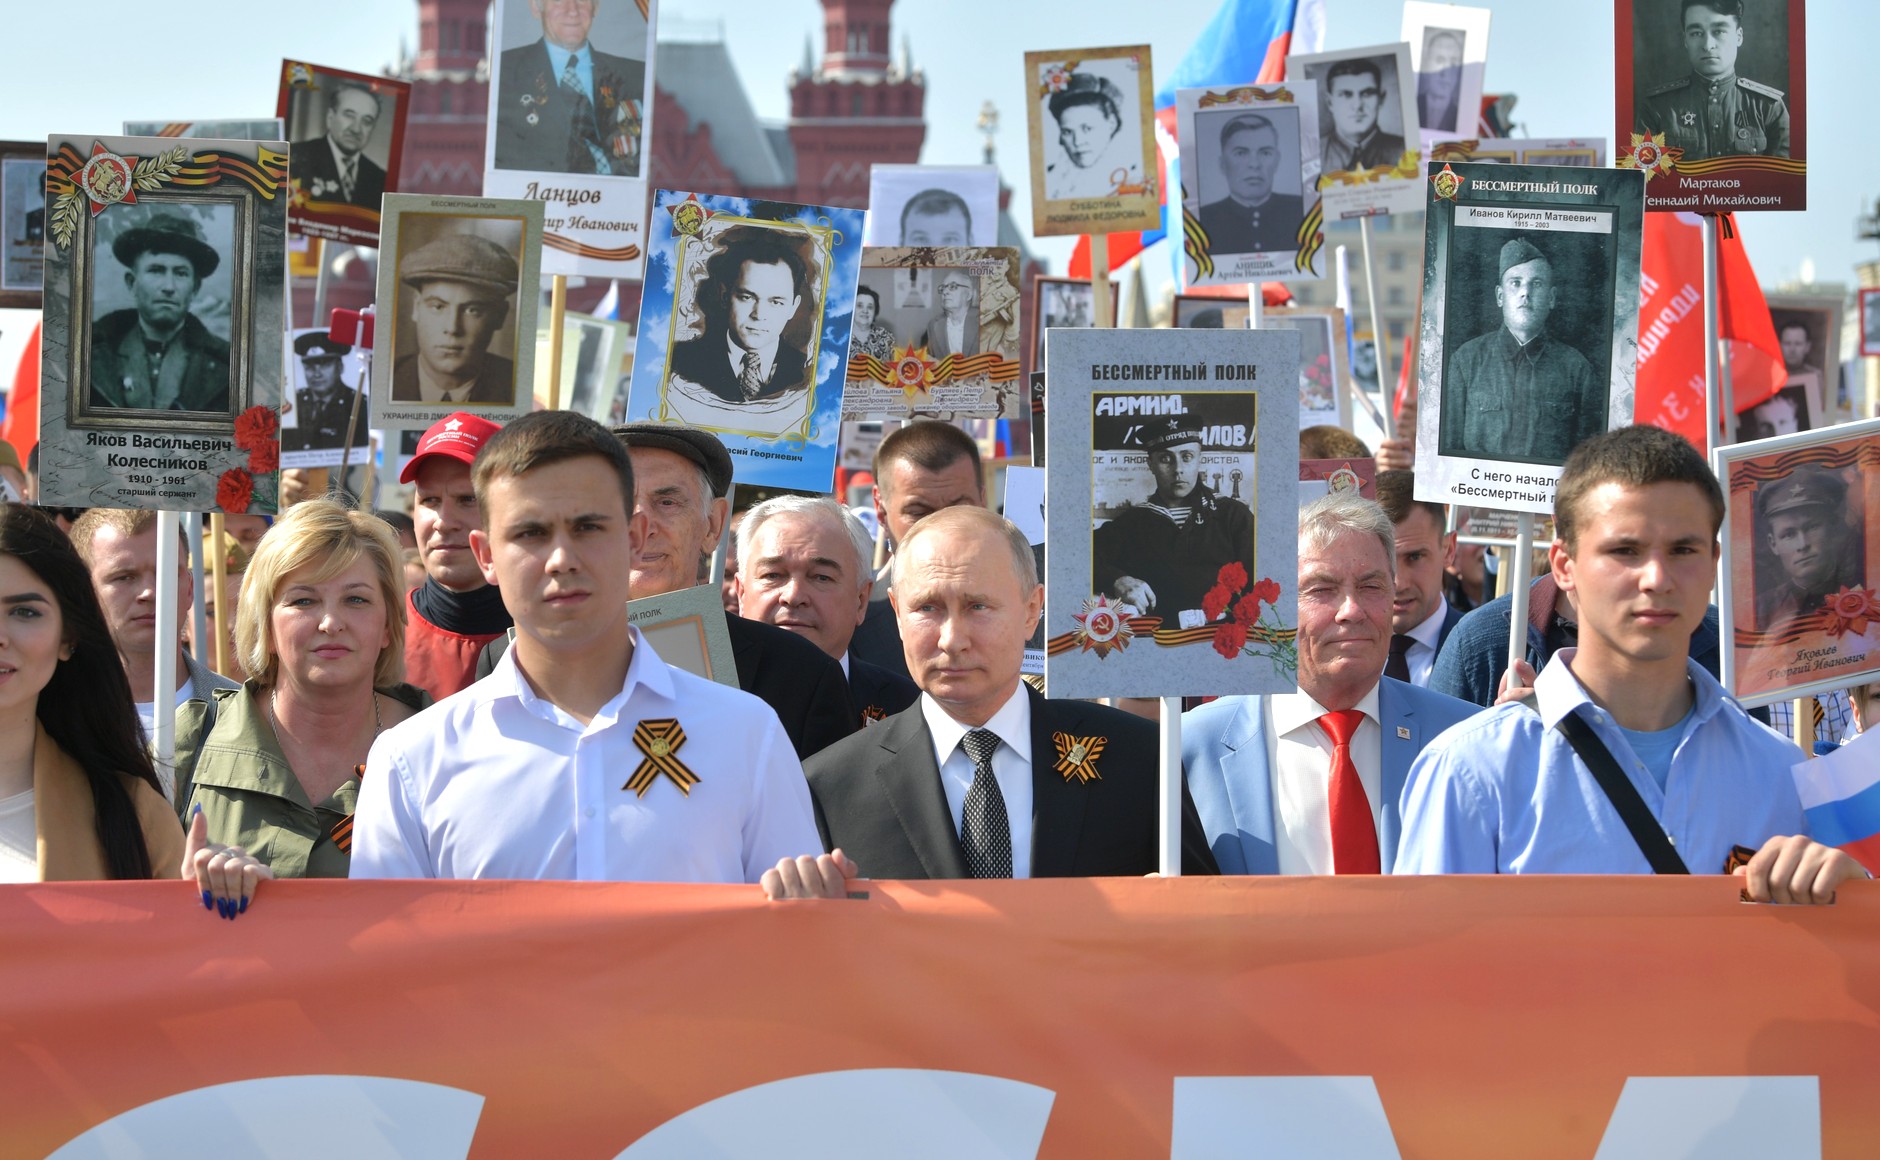 Memorie sau propagandă? Cum au „ucis” politicienii Ziua Victoriei în Moldova și ce legătură are Putin și războiul din Ucraina cu asta